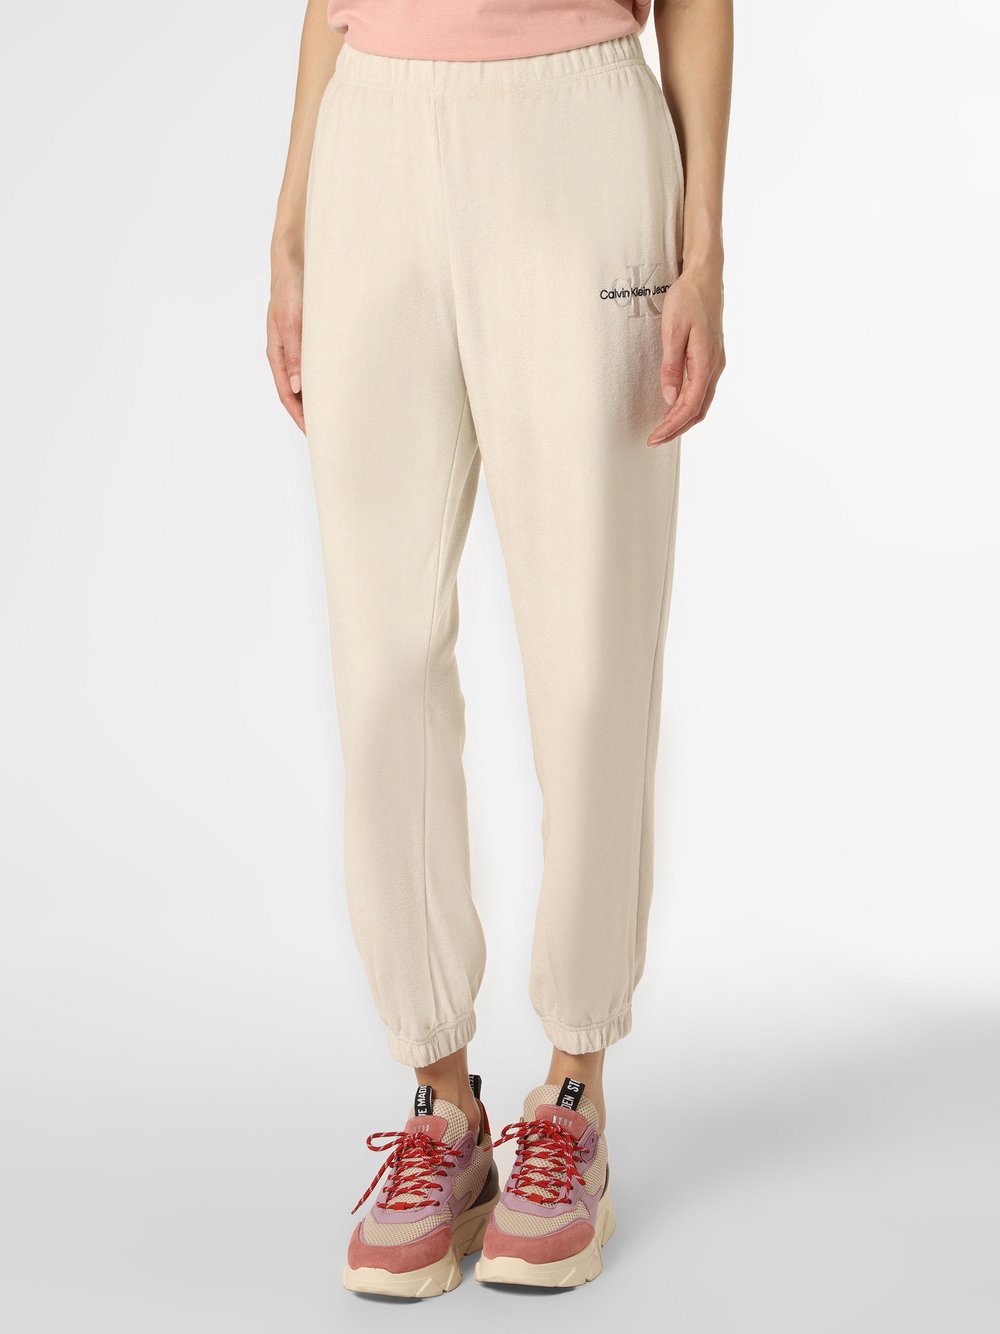 Calvin Klein Jeans - Damskie spodnie dresowe, beżowy|szary